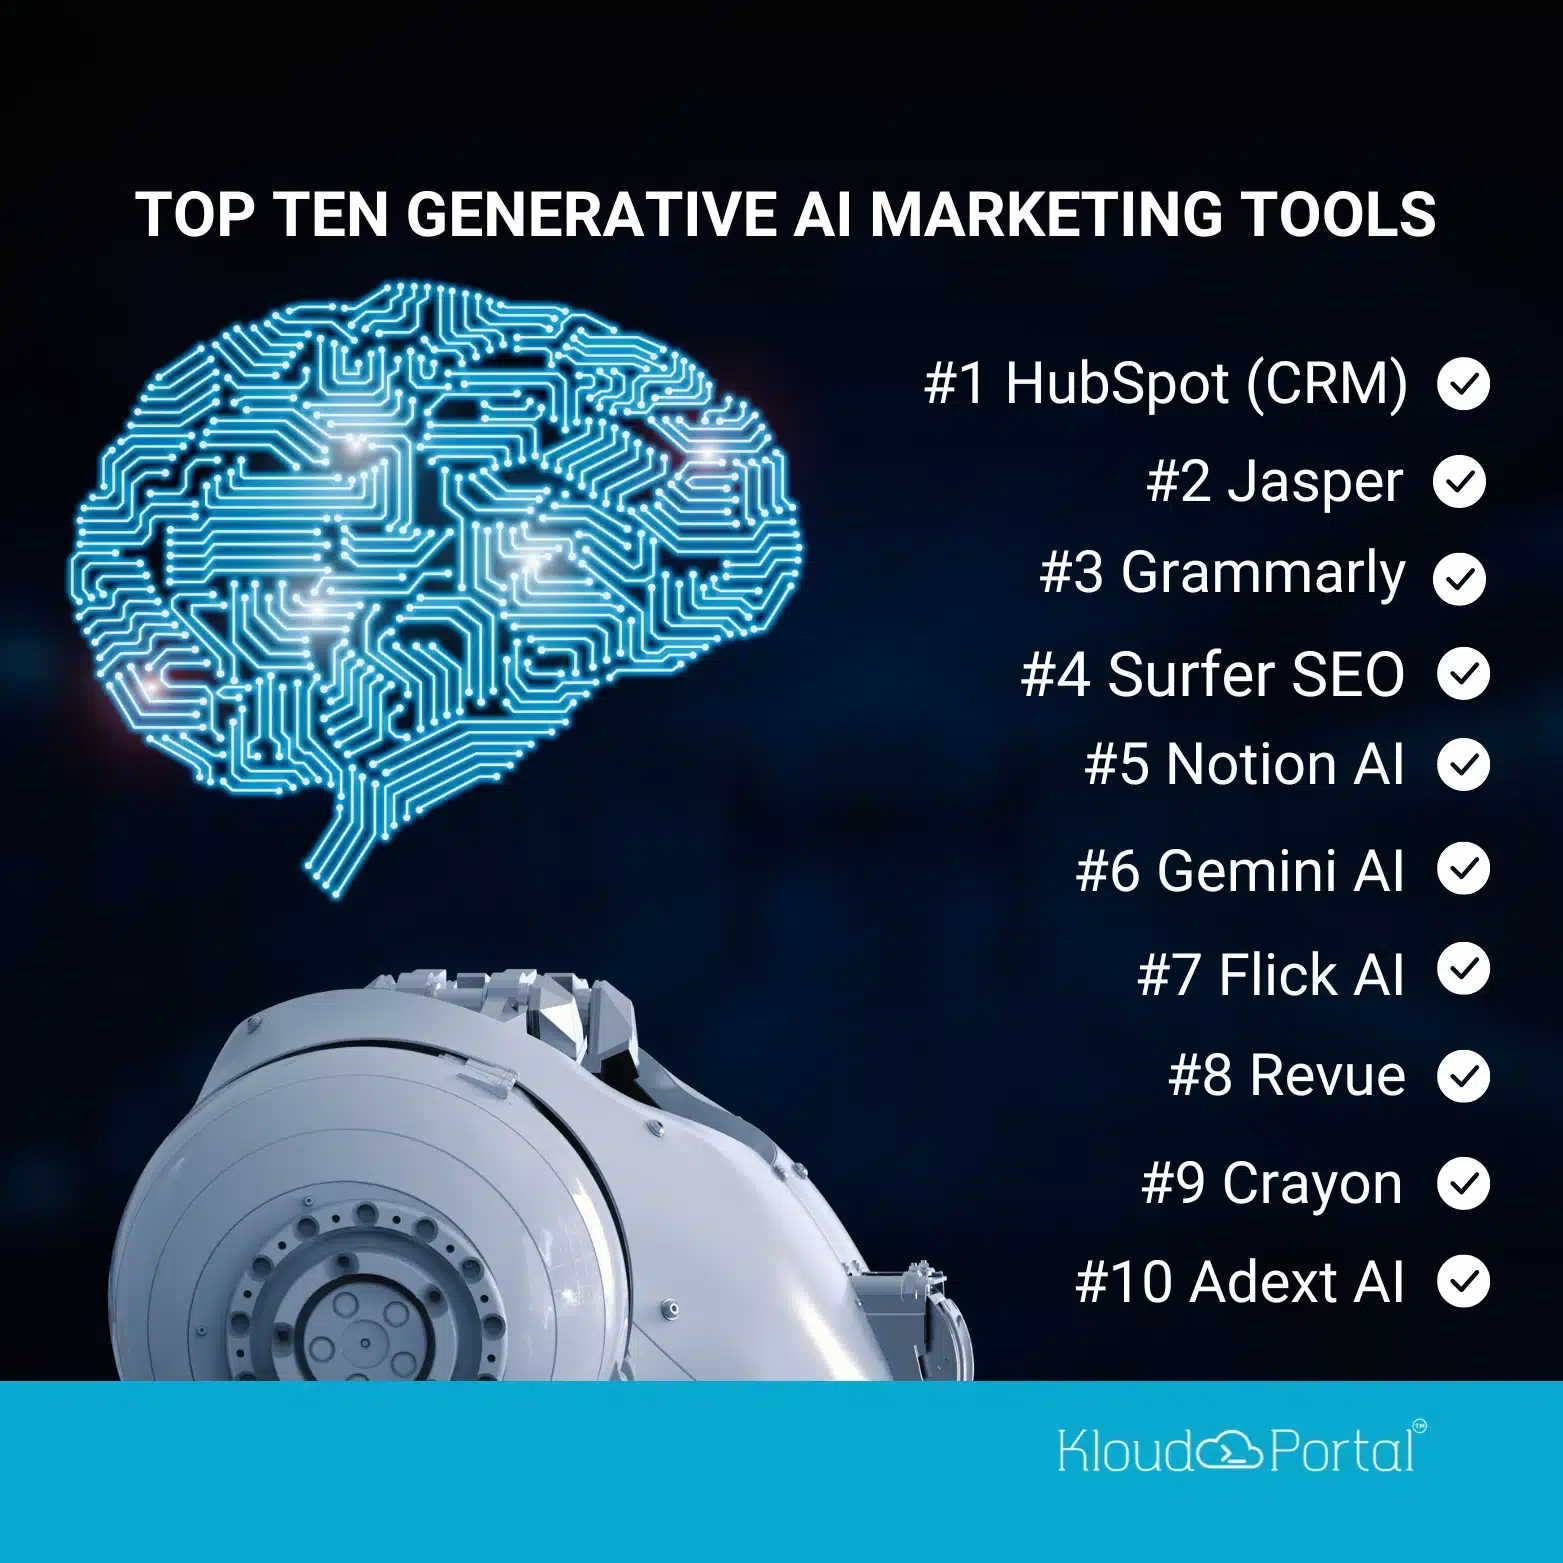 Top 10 Generative AI Marketing Tools